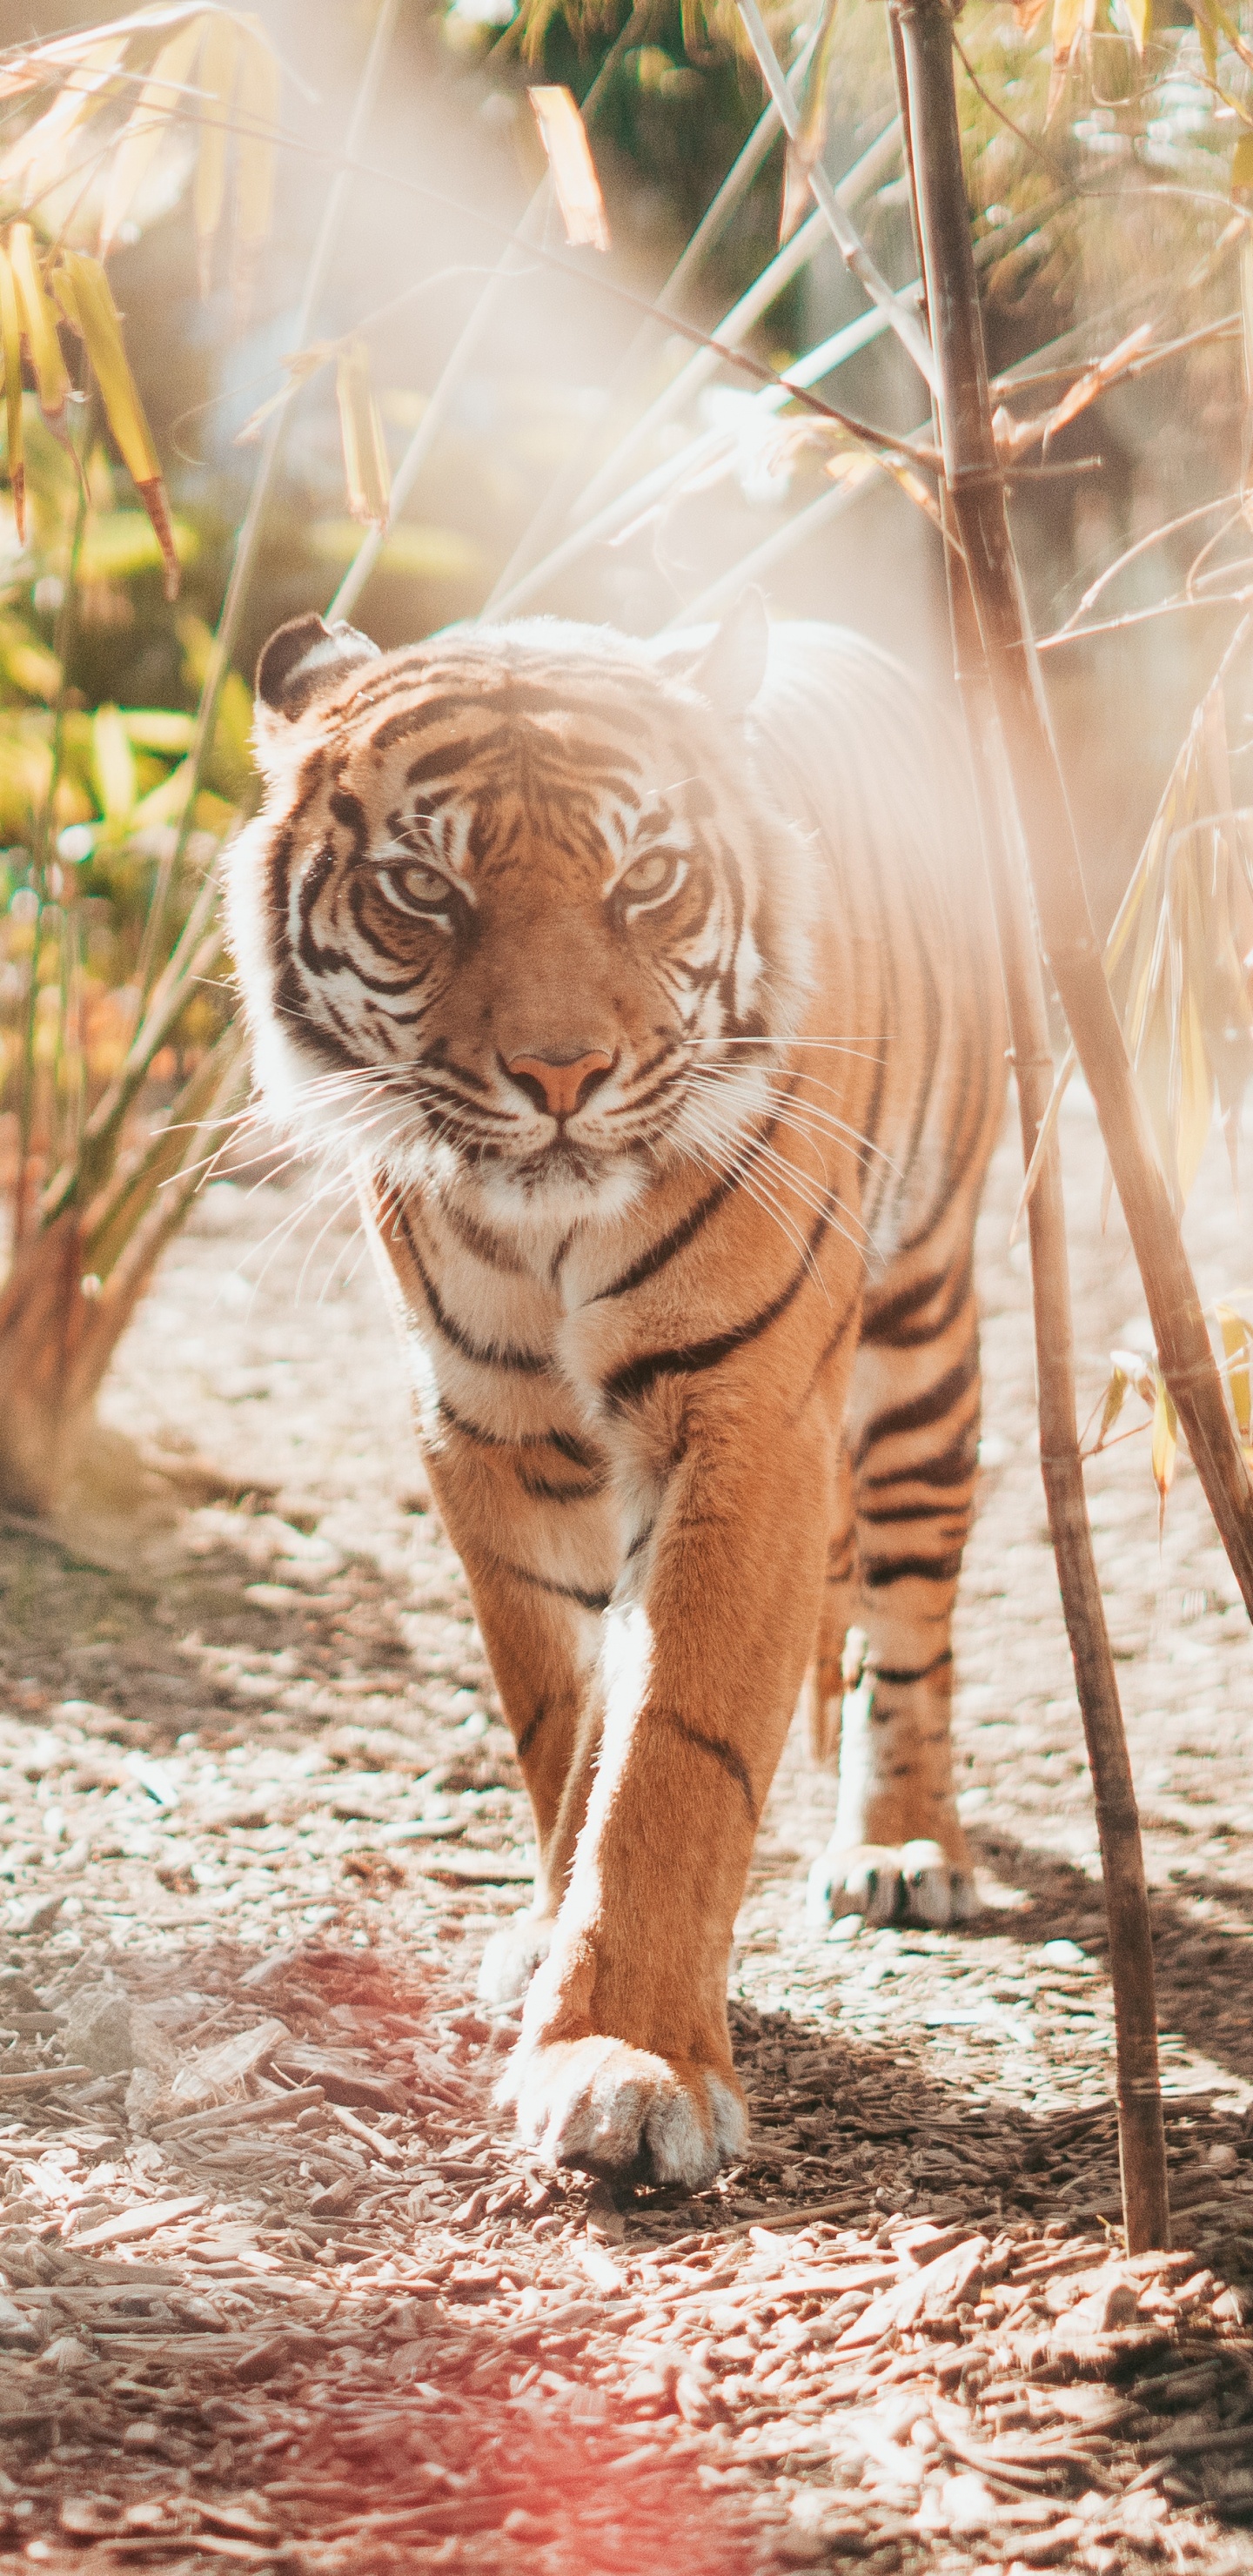 老虎, 孟加拉虎, 野生动物, 陆地动物, 猫科 壁纸 1440x2960 允许